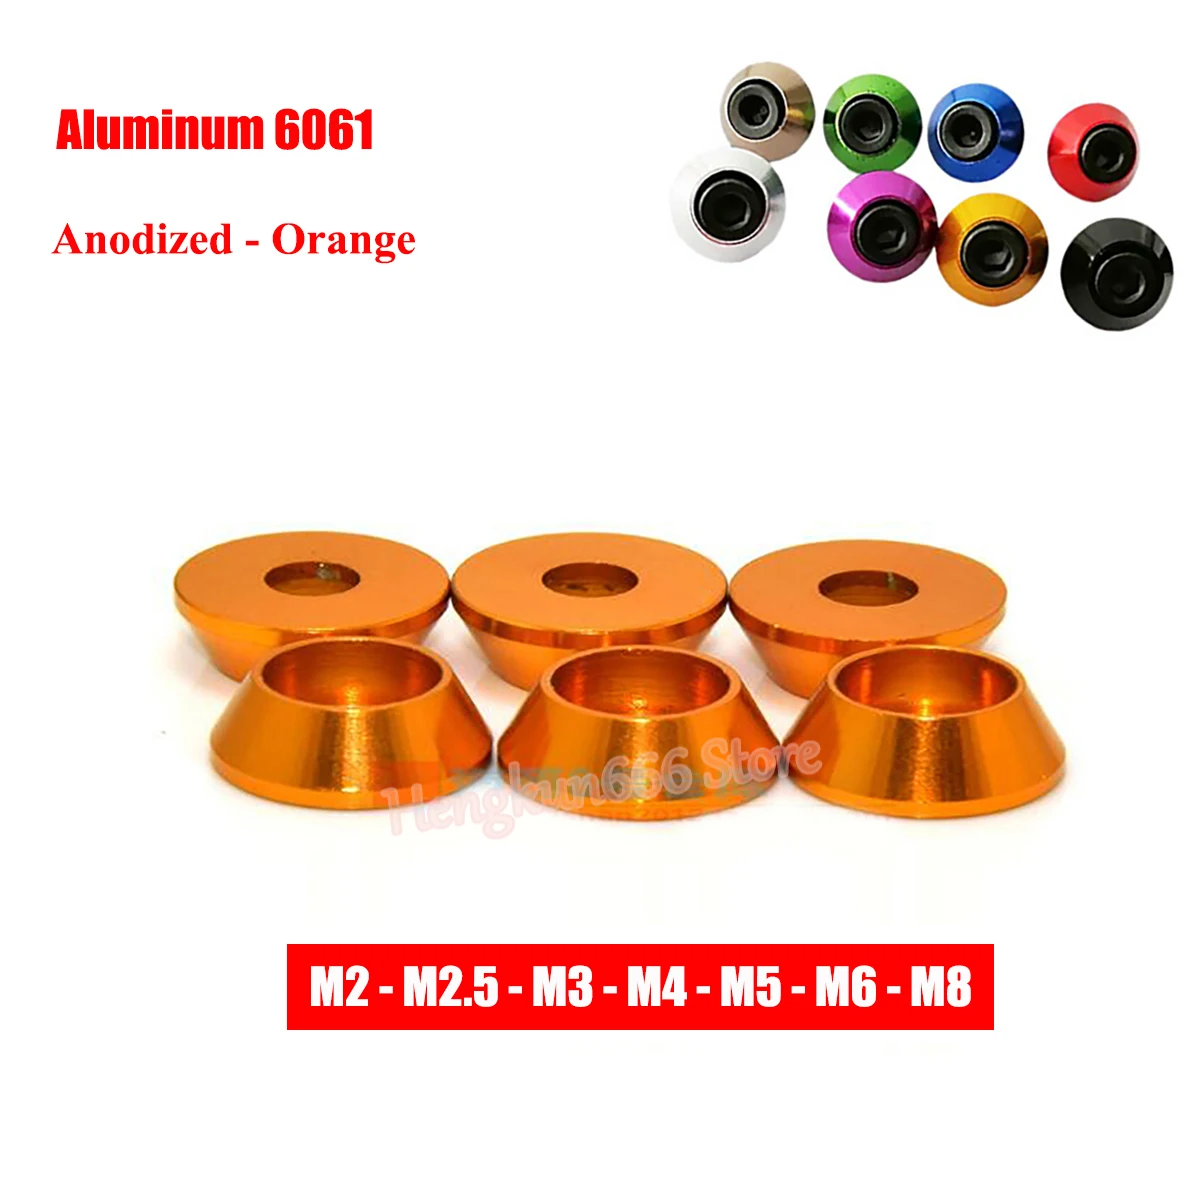 

Aluminum Cap Head Washer M2 M2.5 M3 M4 M5 M6 M8 Anodized - Orange Aluminum Cone Washers Gasket for Hex Socket Cap Head Screw